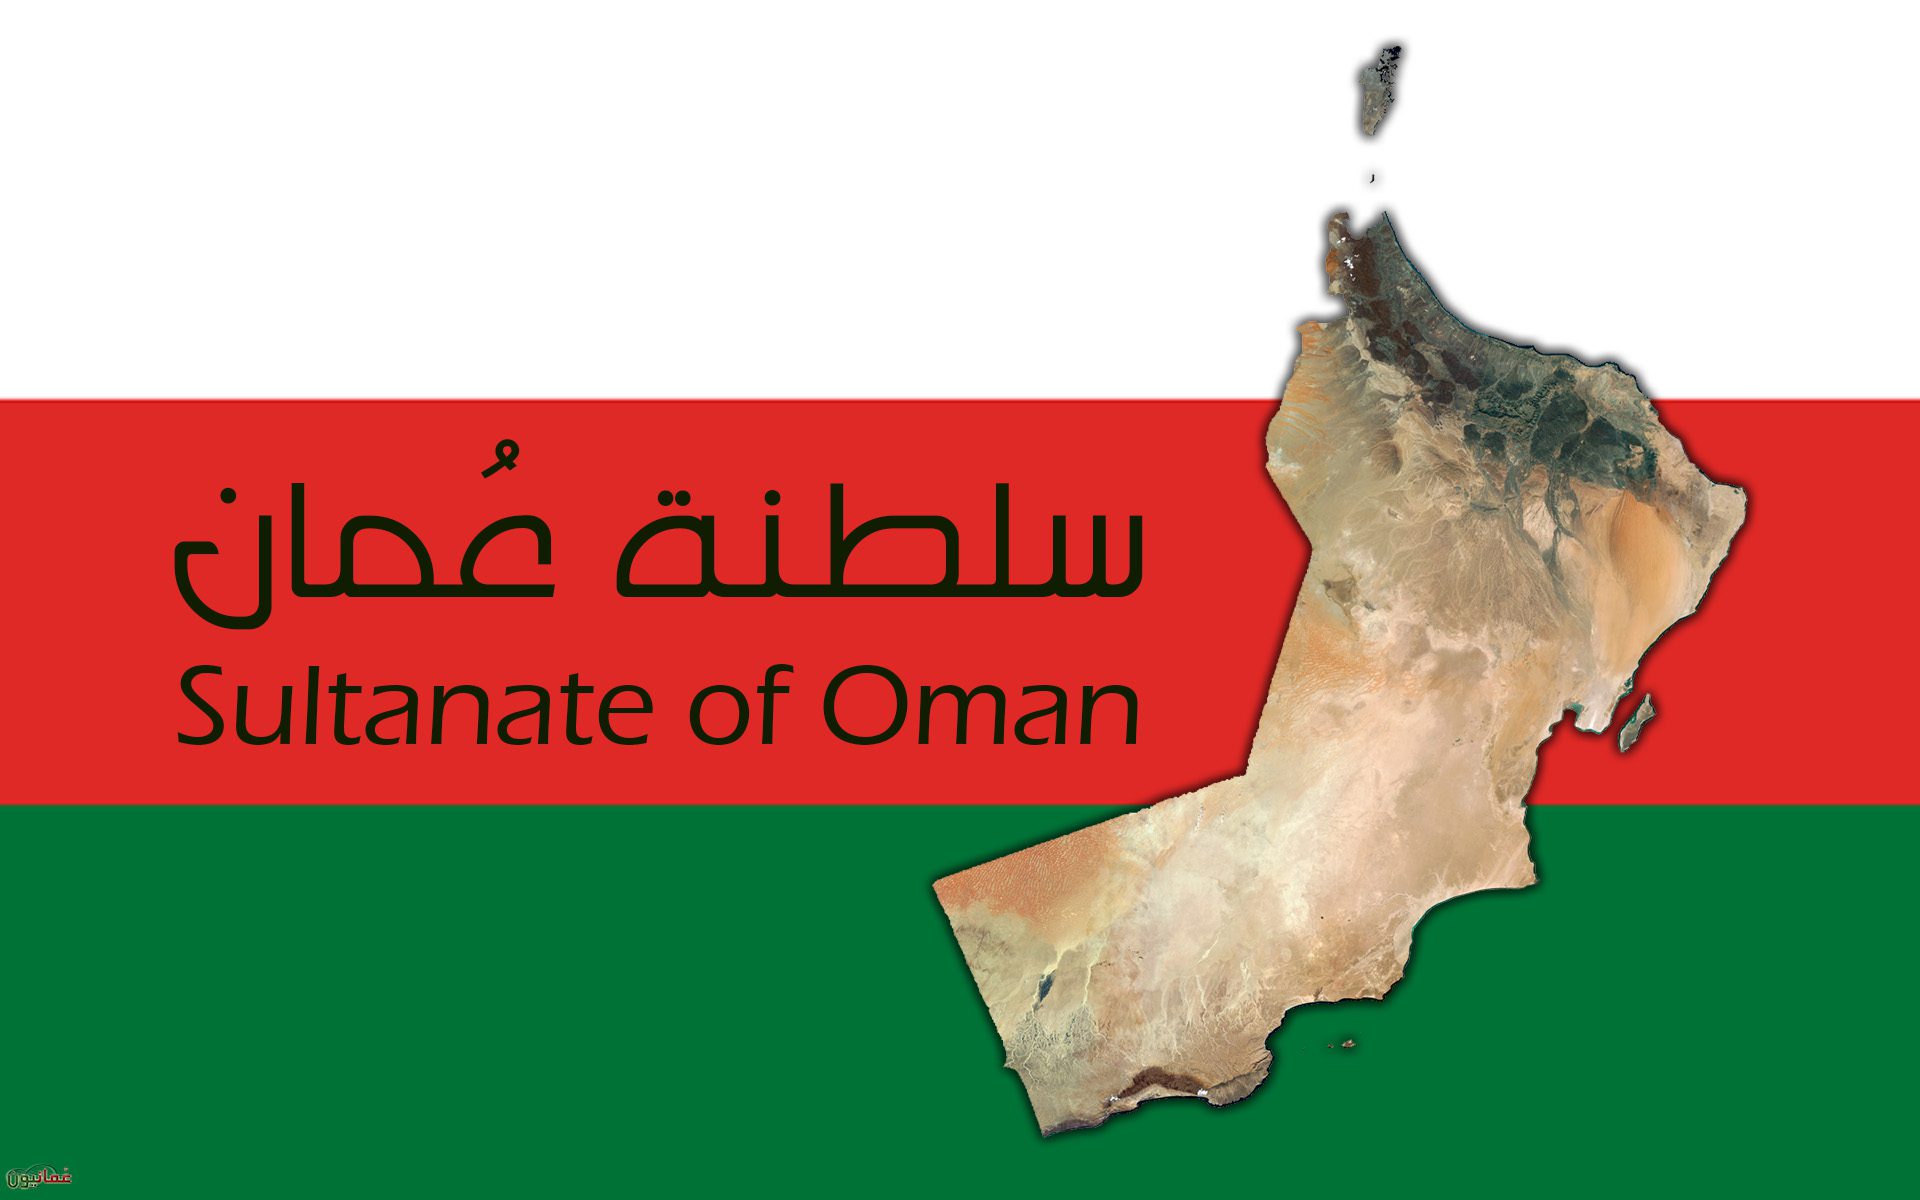 مطلوب مدرسين ومدرسات كافة التخصصات لمدارس كبرى بسلطانة عمان